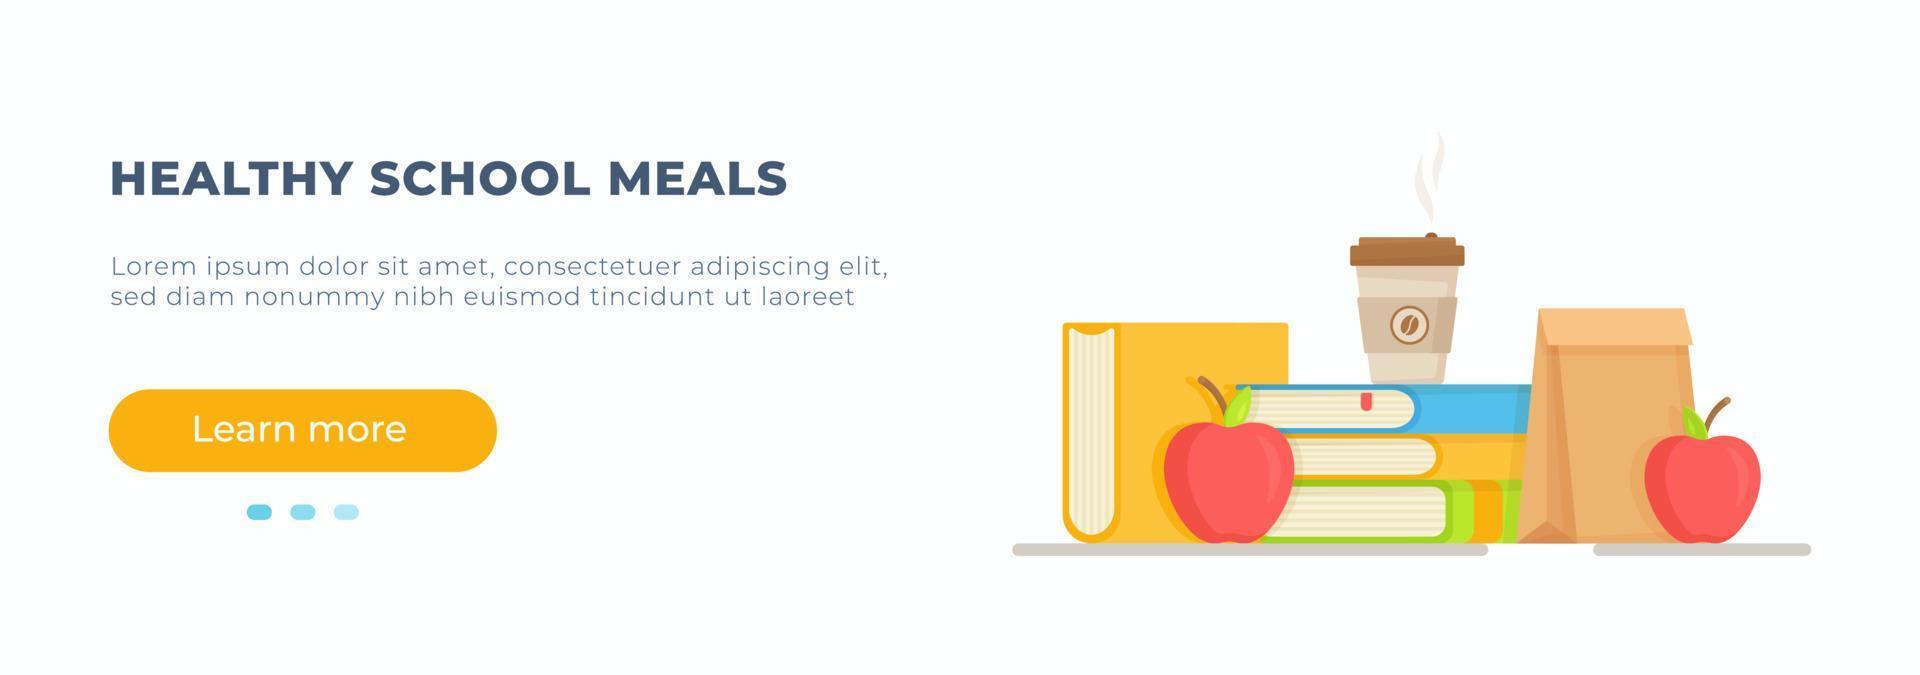 ilustração em vetor de um lanche na escola. alimentação escolar saudável para crianças e estudantes. café da manhã escolar.